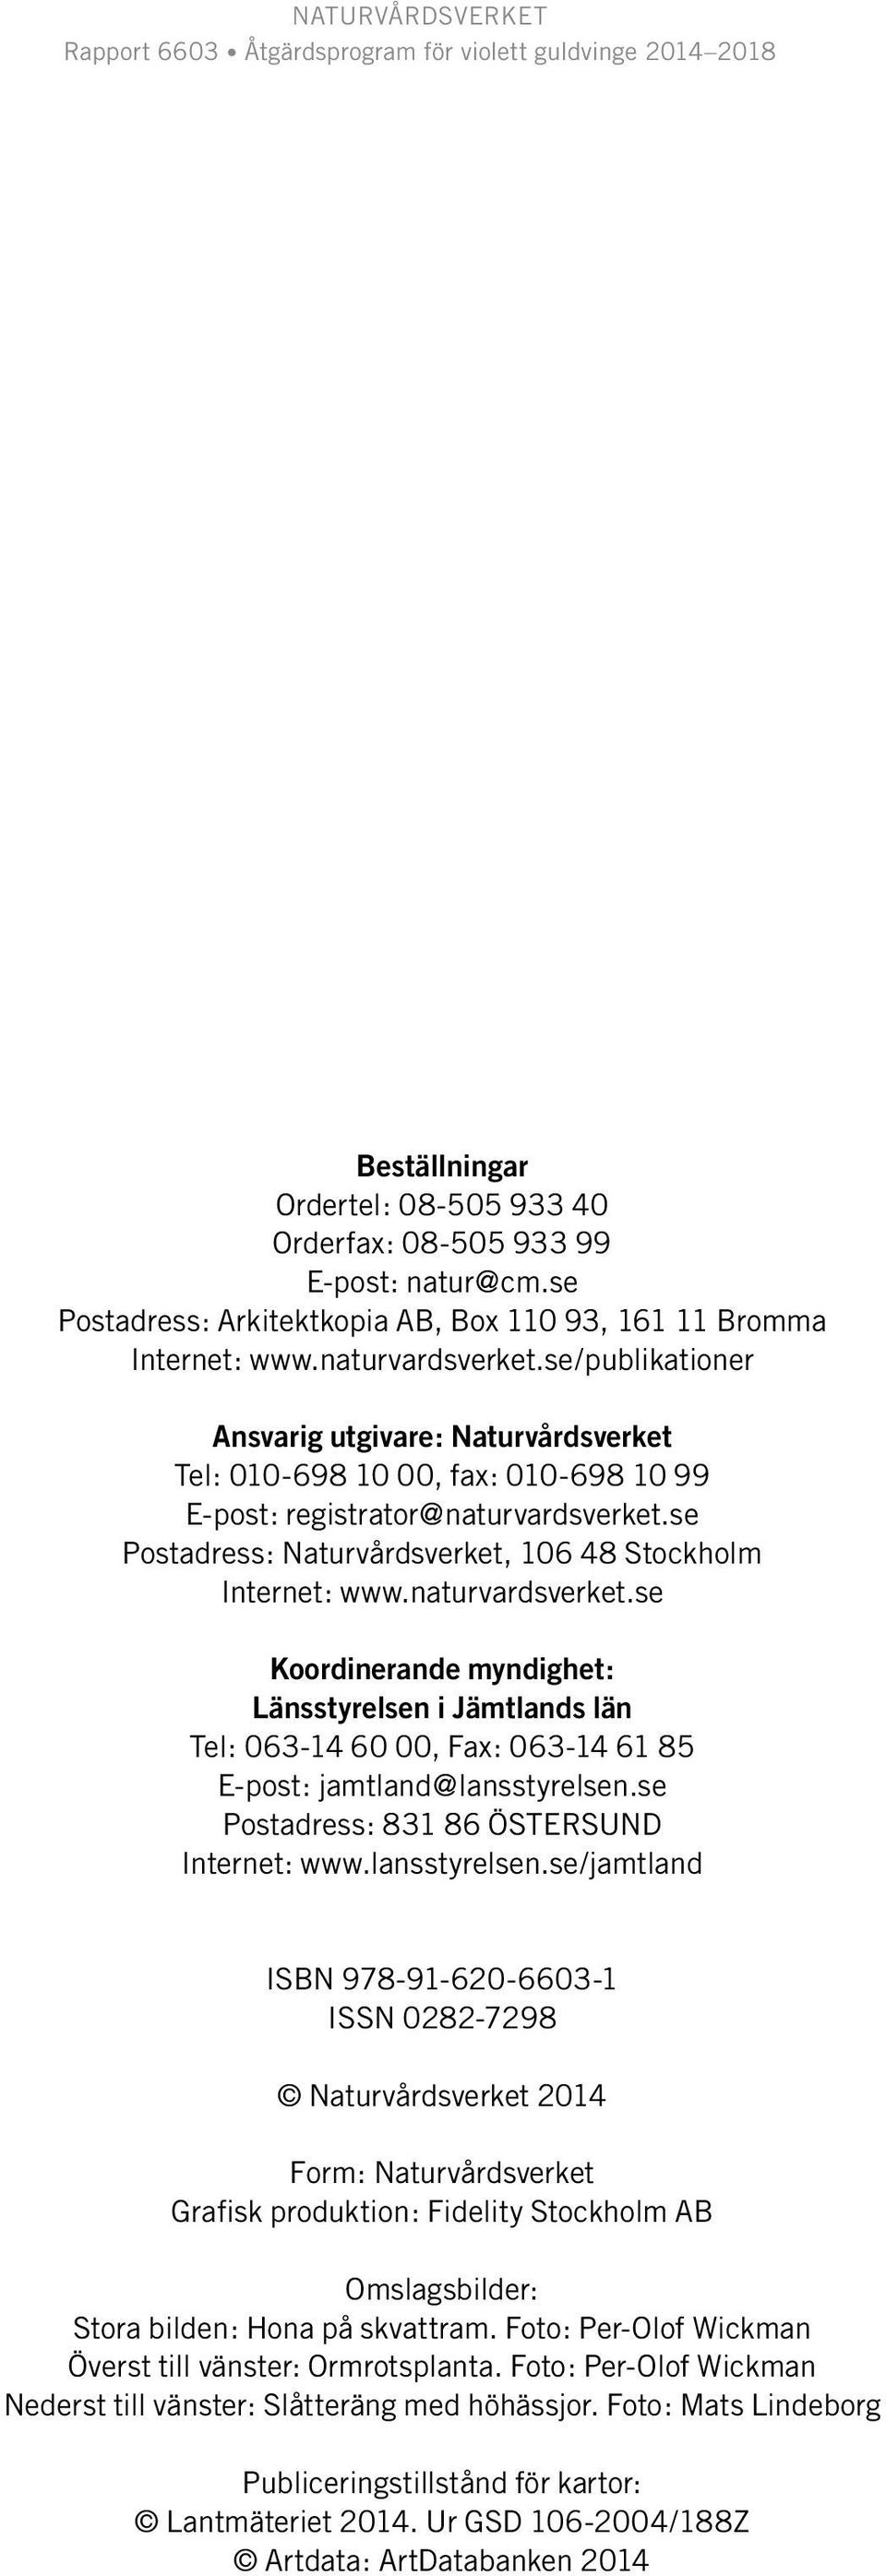 naturvardsverket.se Koordinerande myndighet: Länsstyrelsen i Jämtlands län Tel: 063-14 60 00, Fax: 063-14 61 85 E-post: jamtland@lansstyrelsen.se Postadress: 831 86 ÖSTerSUND Internet: www.